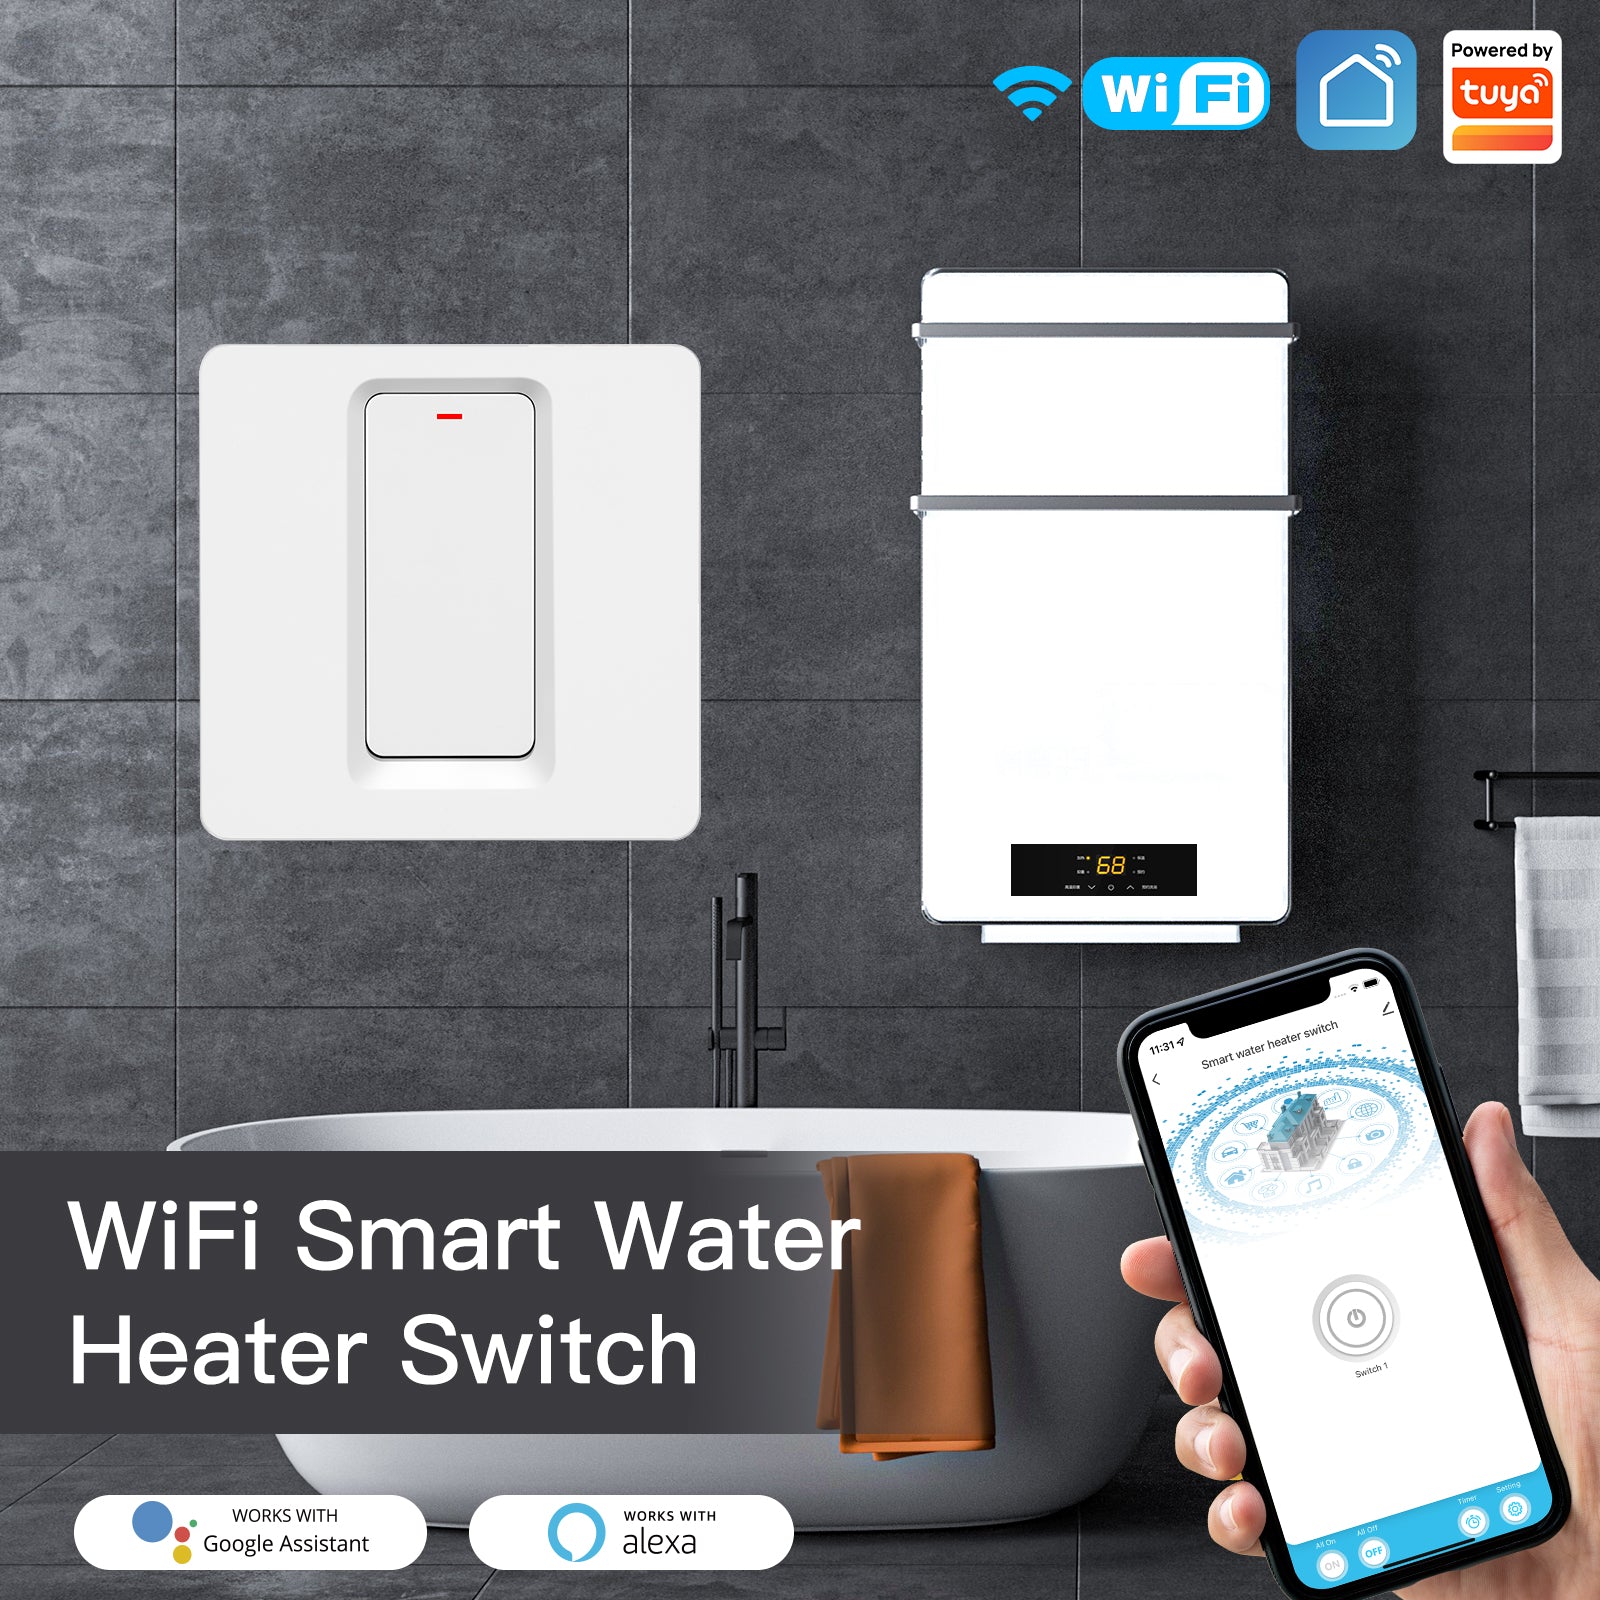 WiFi Smart Water Heater Switch